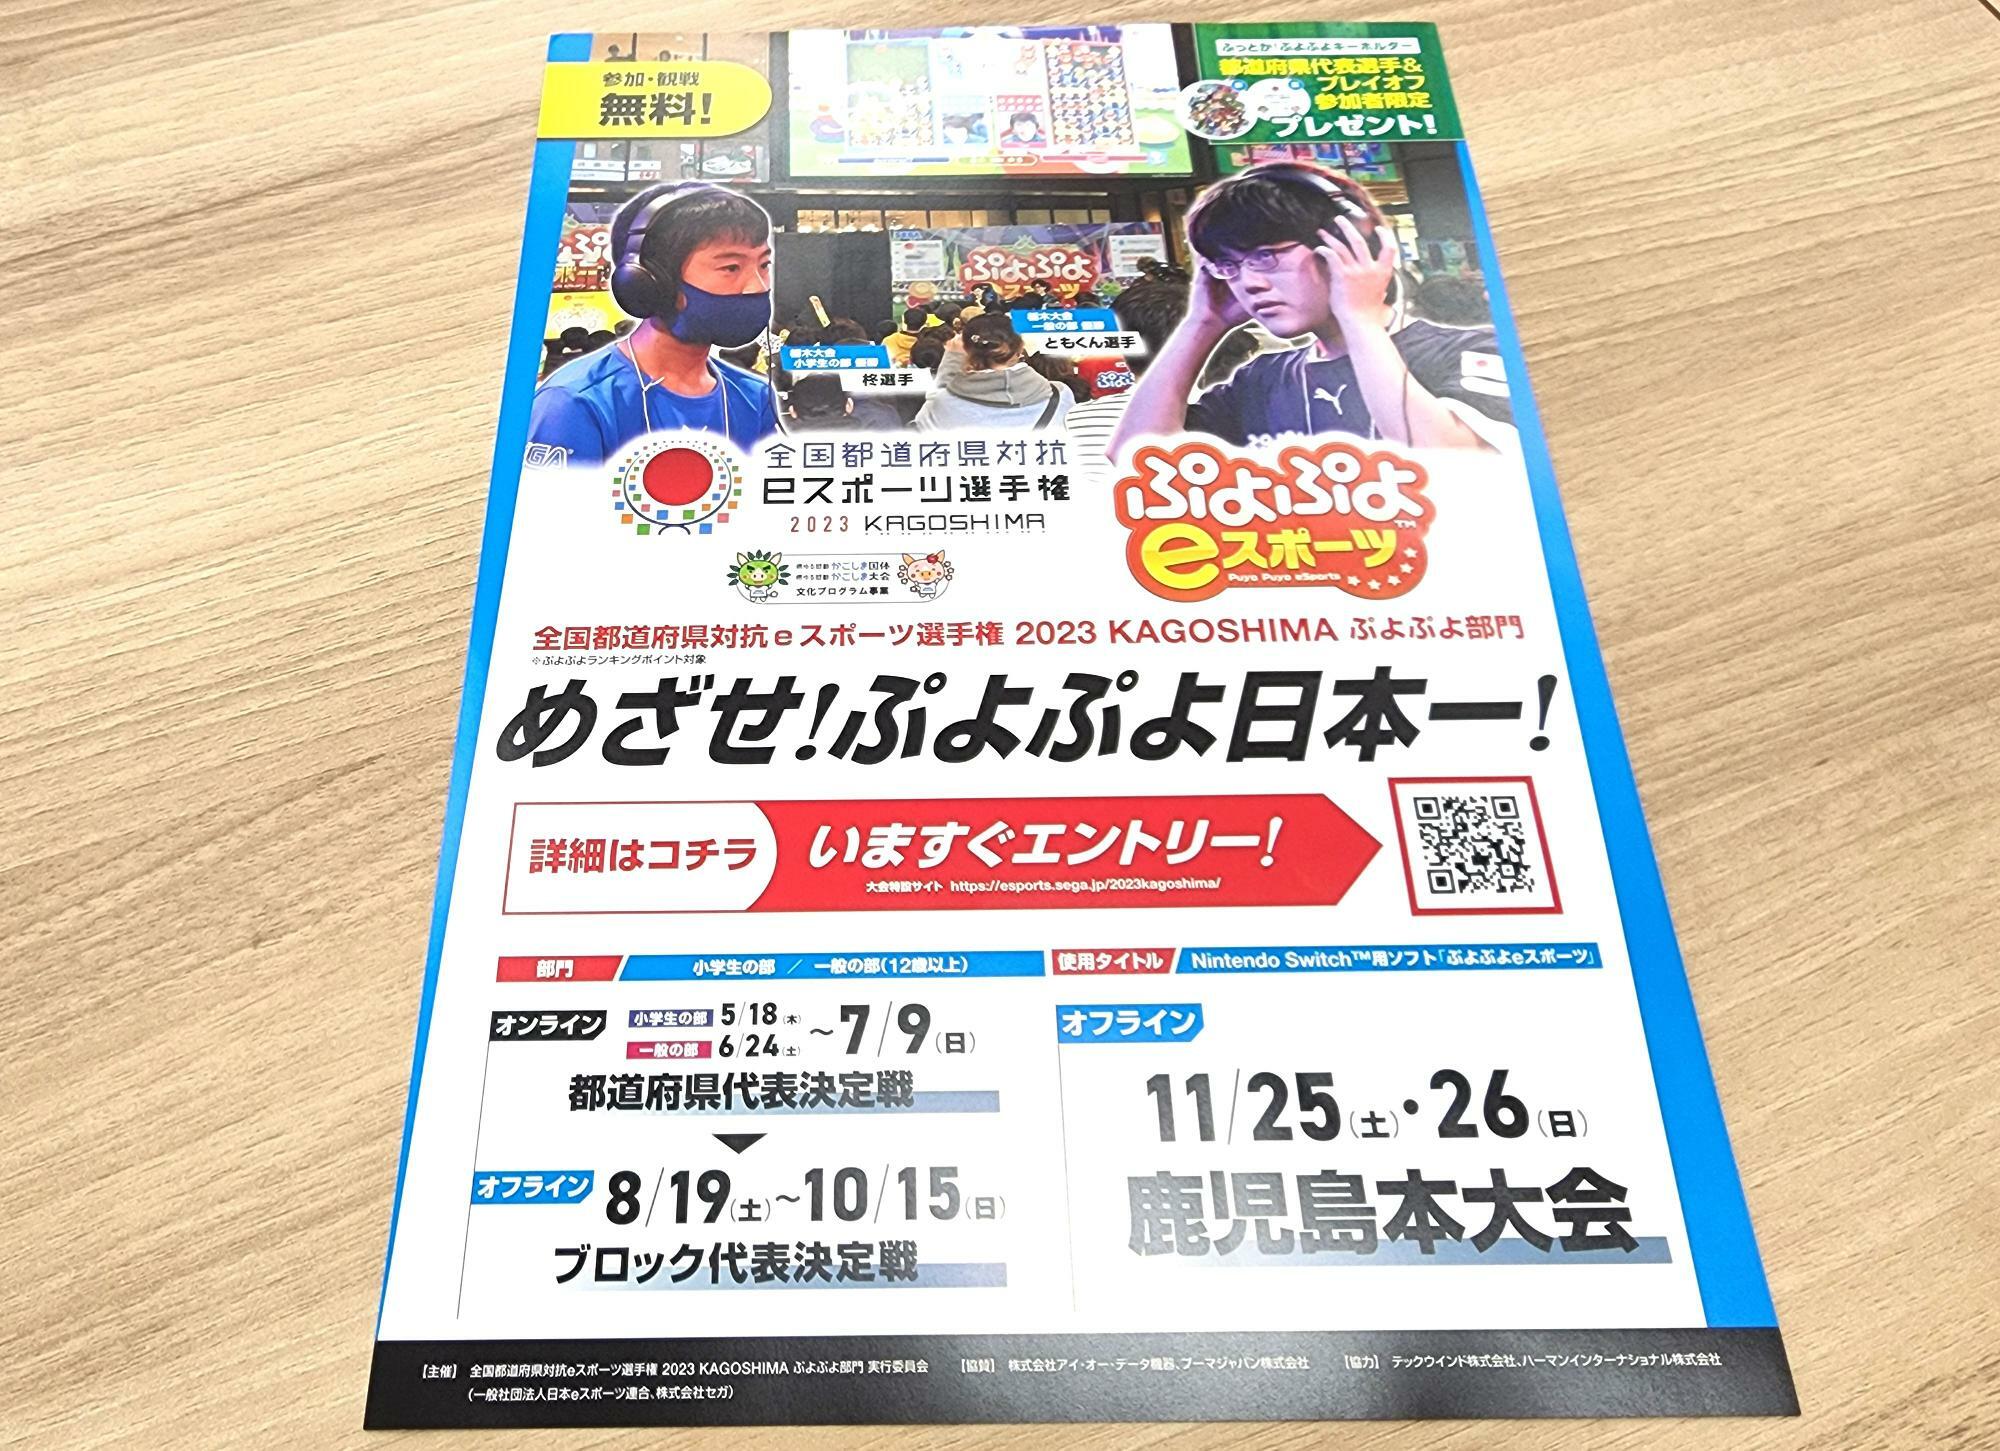 一年に一回開催されている「ぷよぷよ eスポーツ」のチラシ。